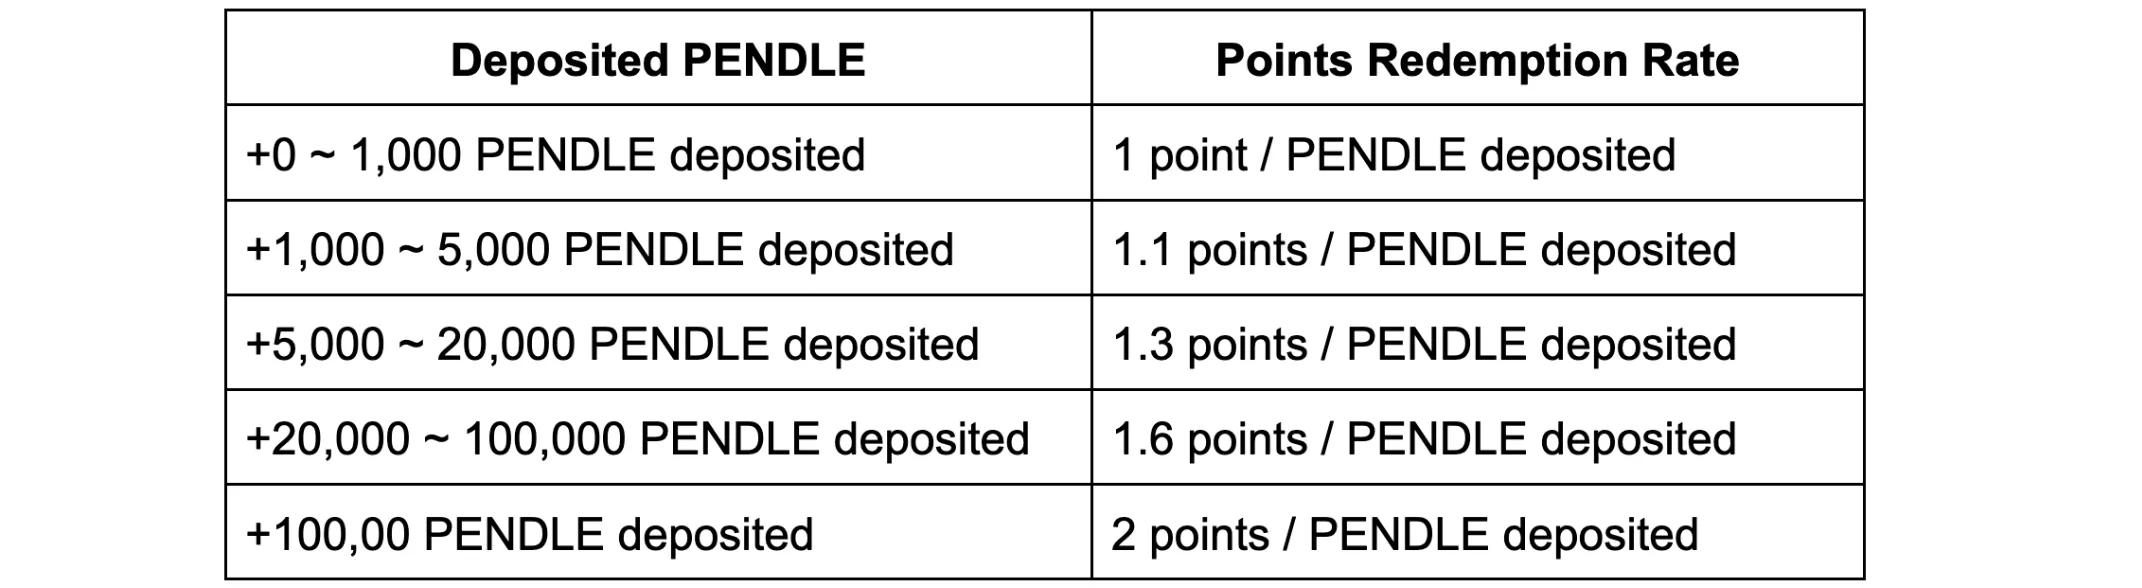 Pendle points